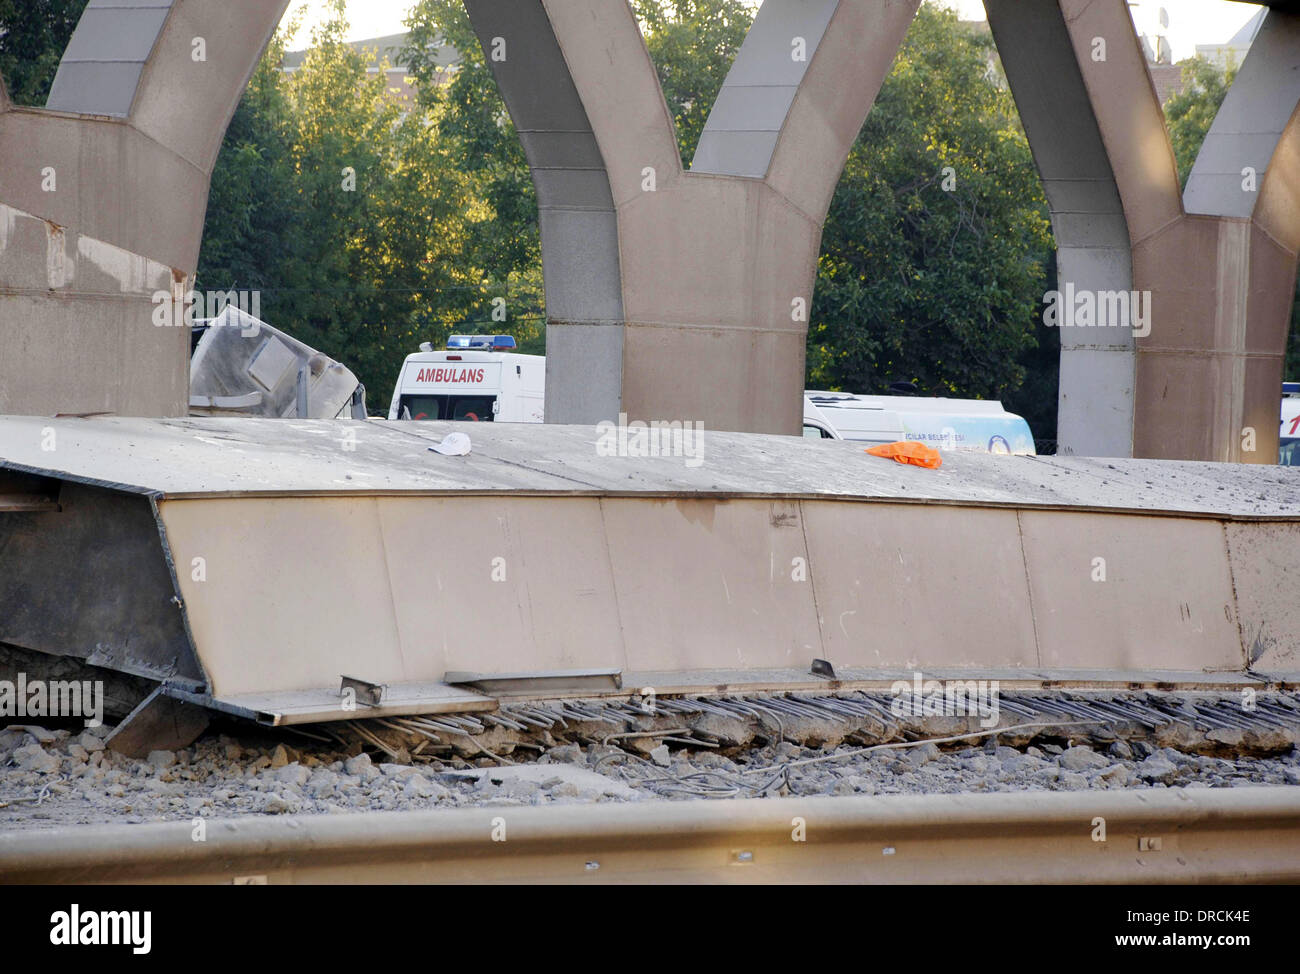 Metrobus puente se derrumba un puente de cemento siding colapsó durante el trabajo de reparación en Estambul en línea Metrobús Avcilar-Beylikduzu el 15 de julio, matando a uno de ellos e hiriendo a dos trabajadores. El puente de conexión estaba siendo construida a través de la E-5 autopista cuando un gran Foto de stock